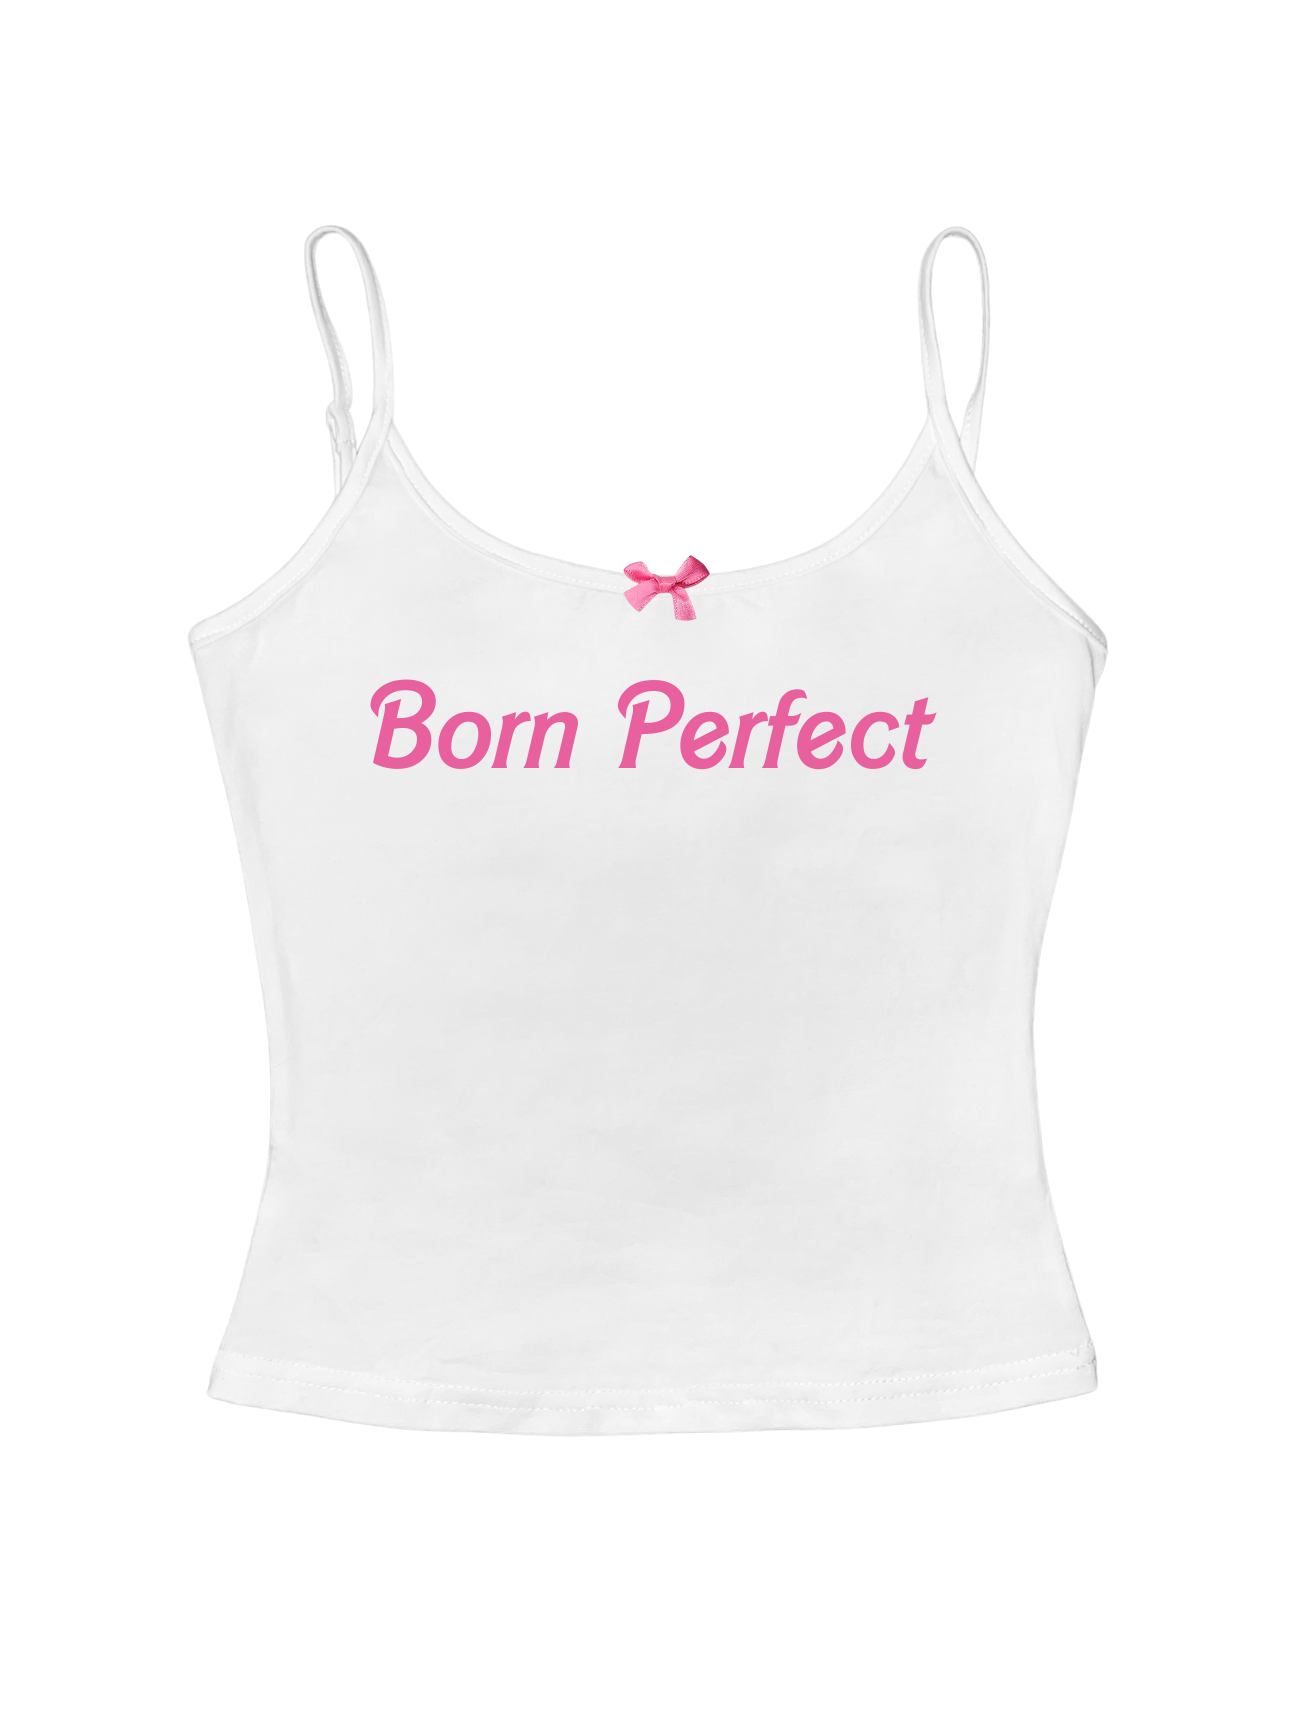 Born Perfect White